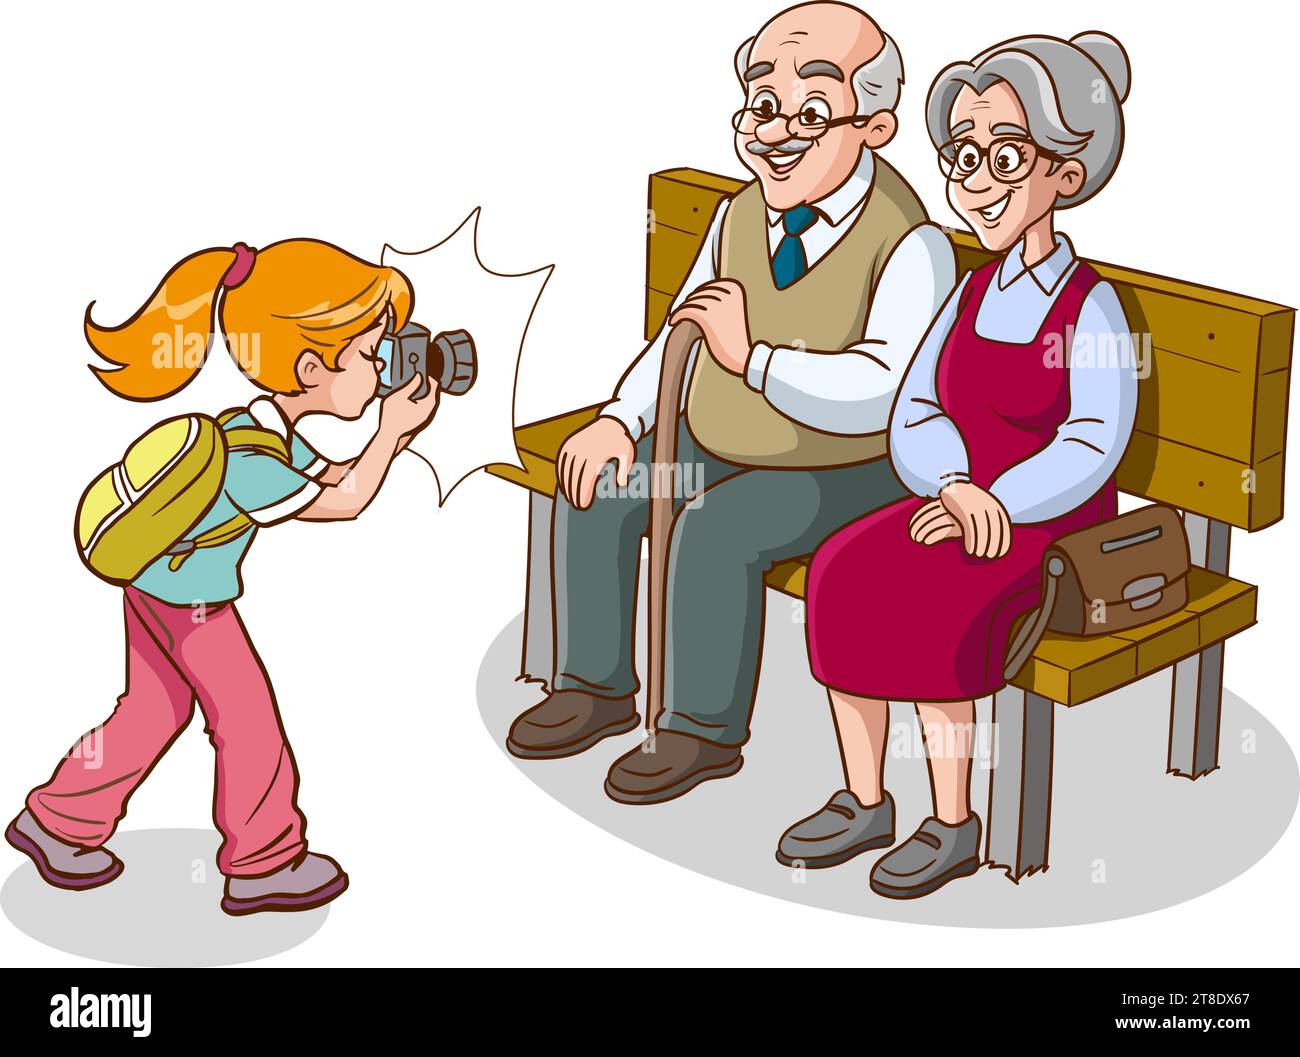 Großelternteil sitzt auf Bank und Enkelkind-Comic-Vektor Stock Vektor